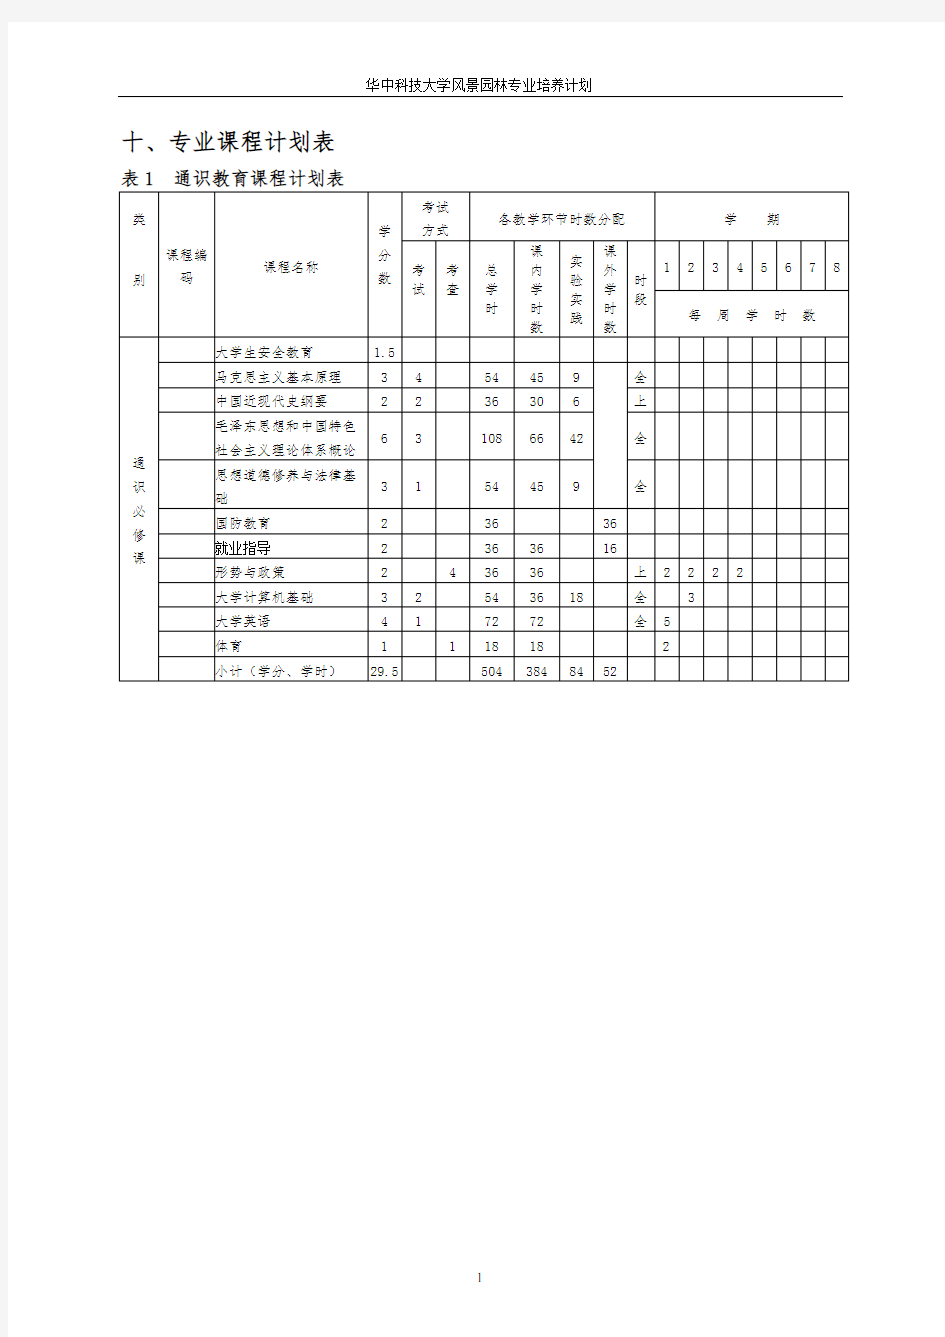 华中科技大学园林专业课程表